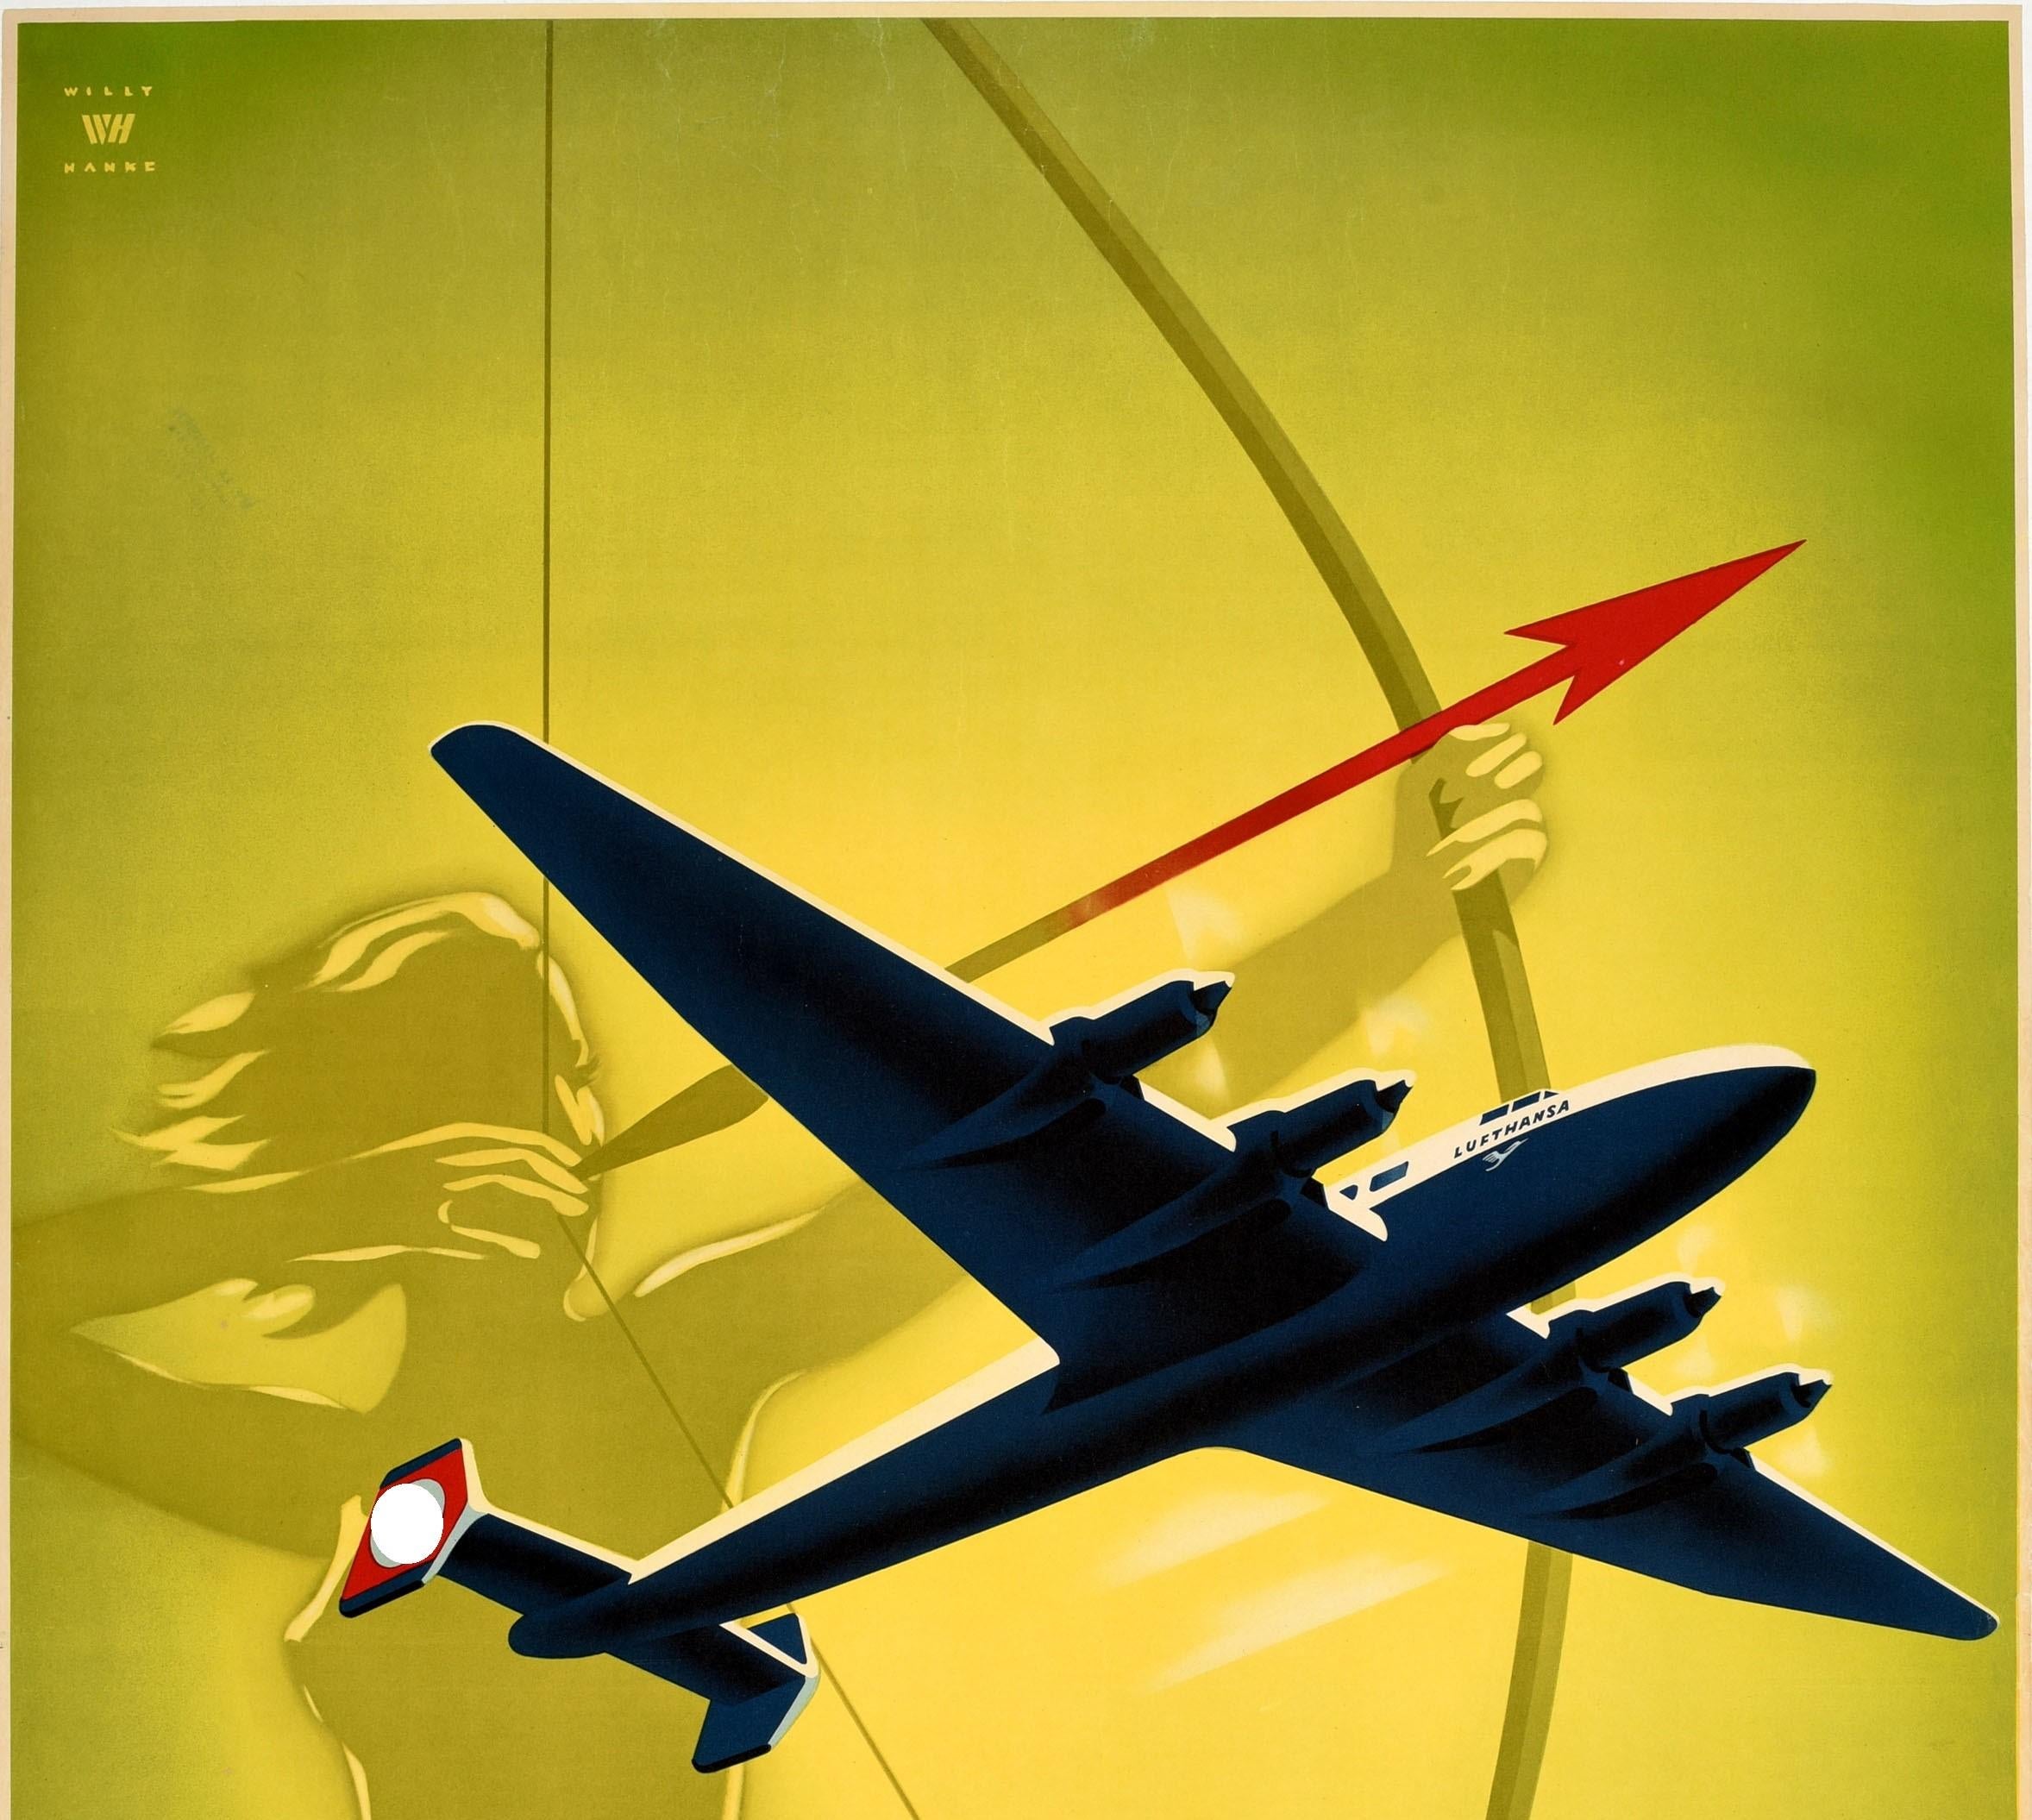 Affiche de voyage vintage originale faisant la publicité de la Deutsche Lufthansa et présentant une illustration dynamique de style Art Déco d'un avion à hélice portant le logo de la grue de la Lufthansa et le drapeau nazi allemand à croix gammée